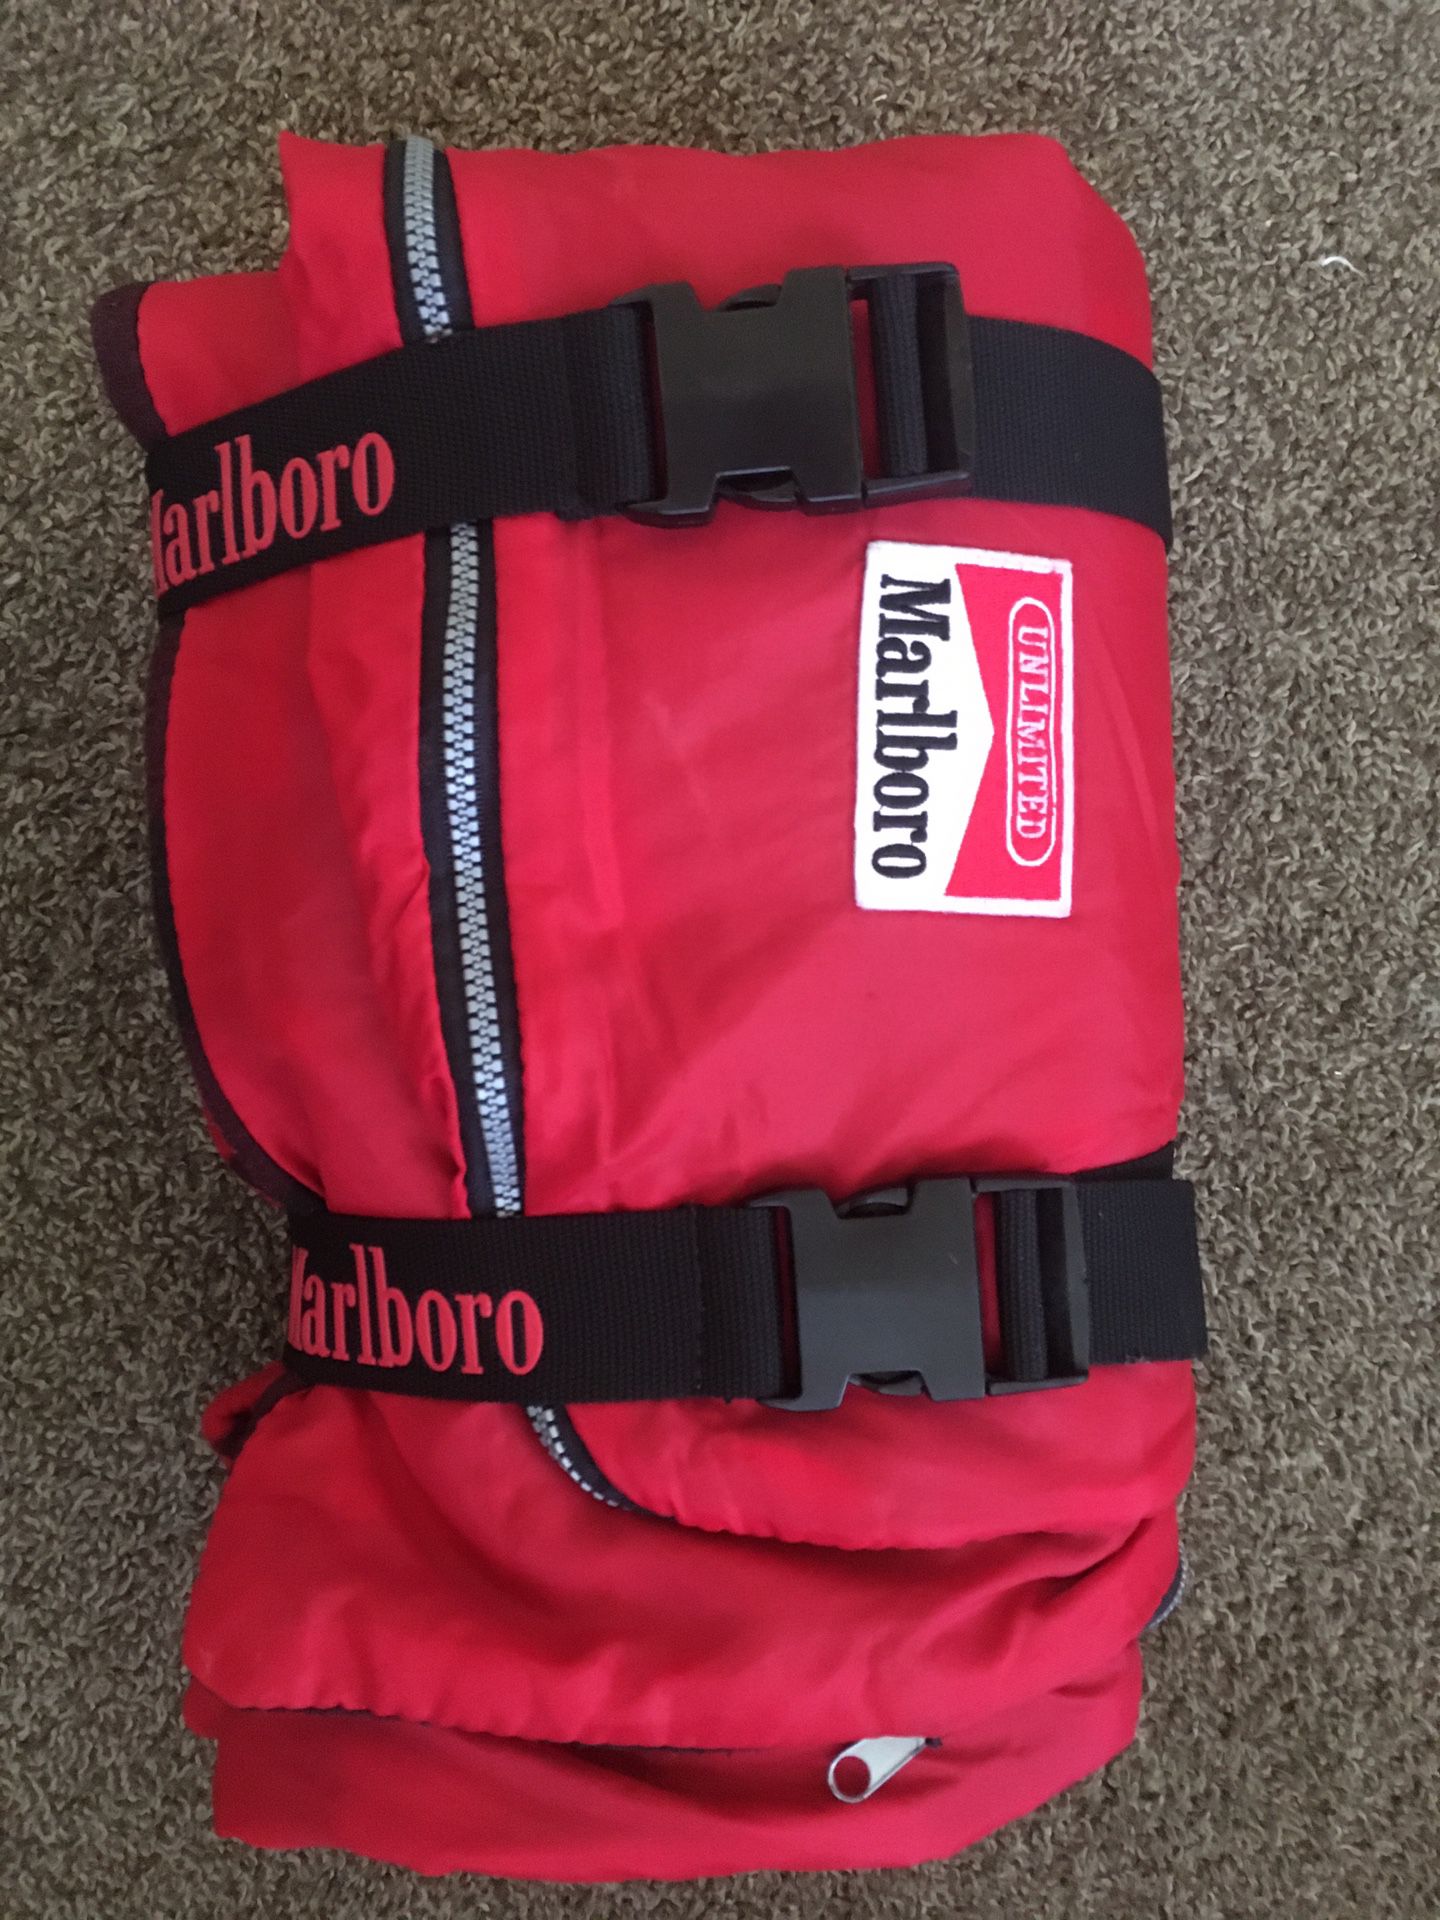 Marlboro Sleeping bag/blanket